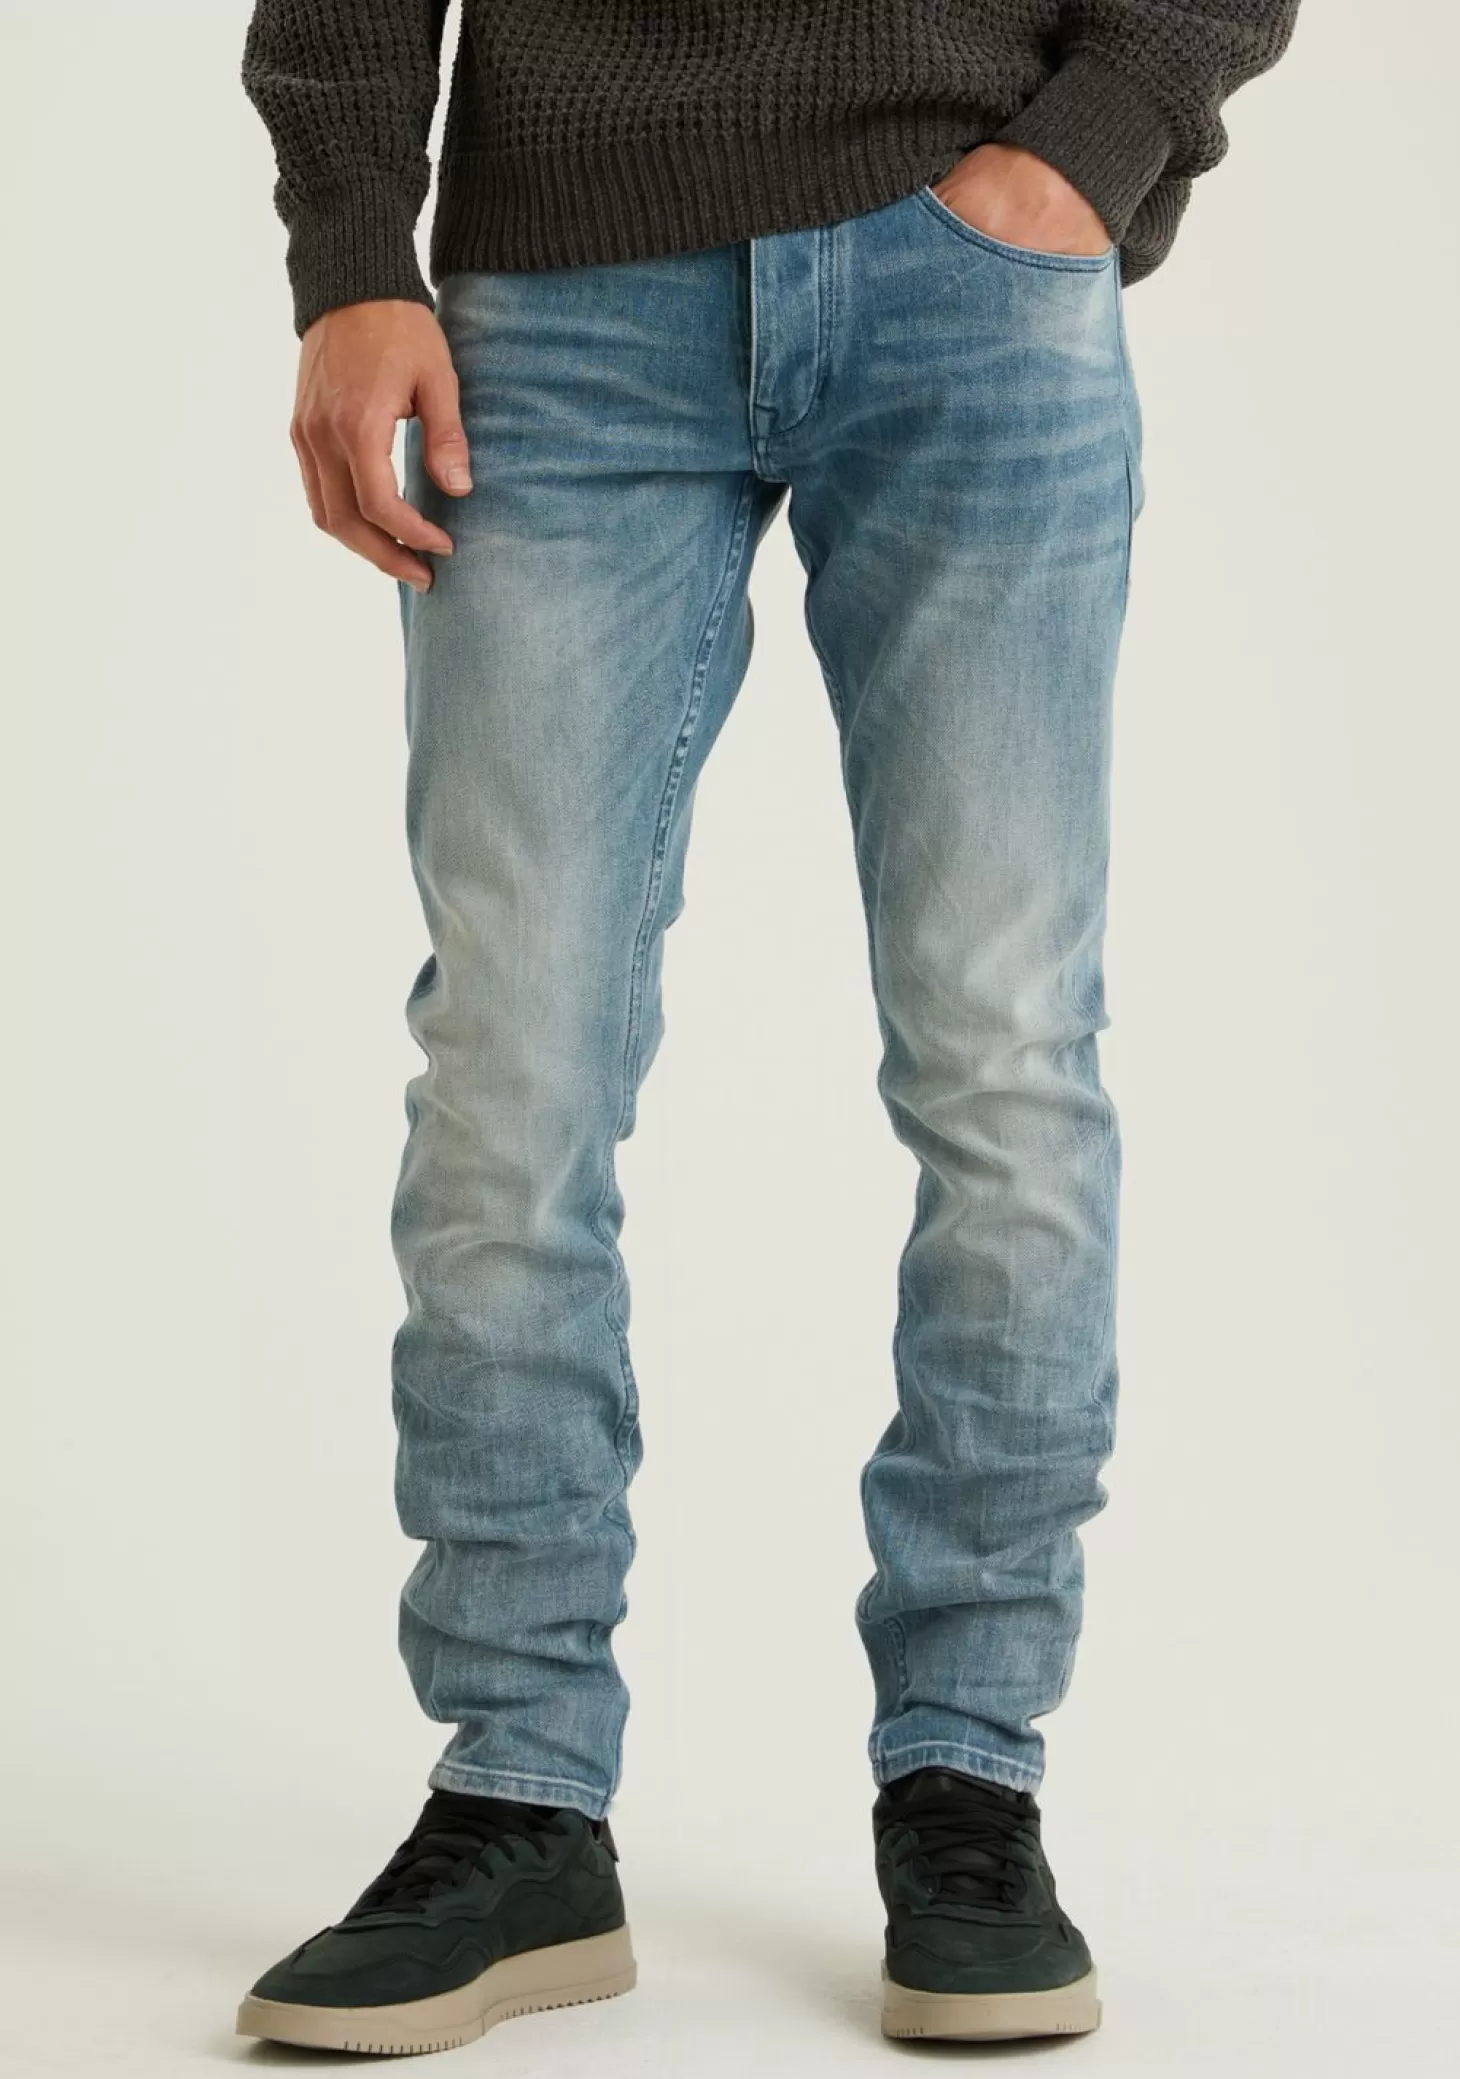 CHASIN' Jeans | Blue Jeans*EGO Kian Jeans - Chasin' EN